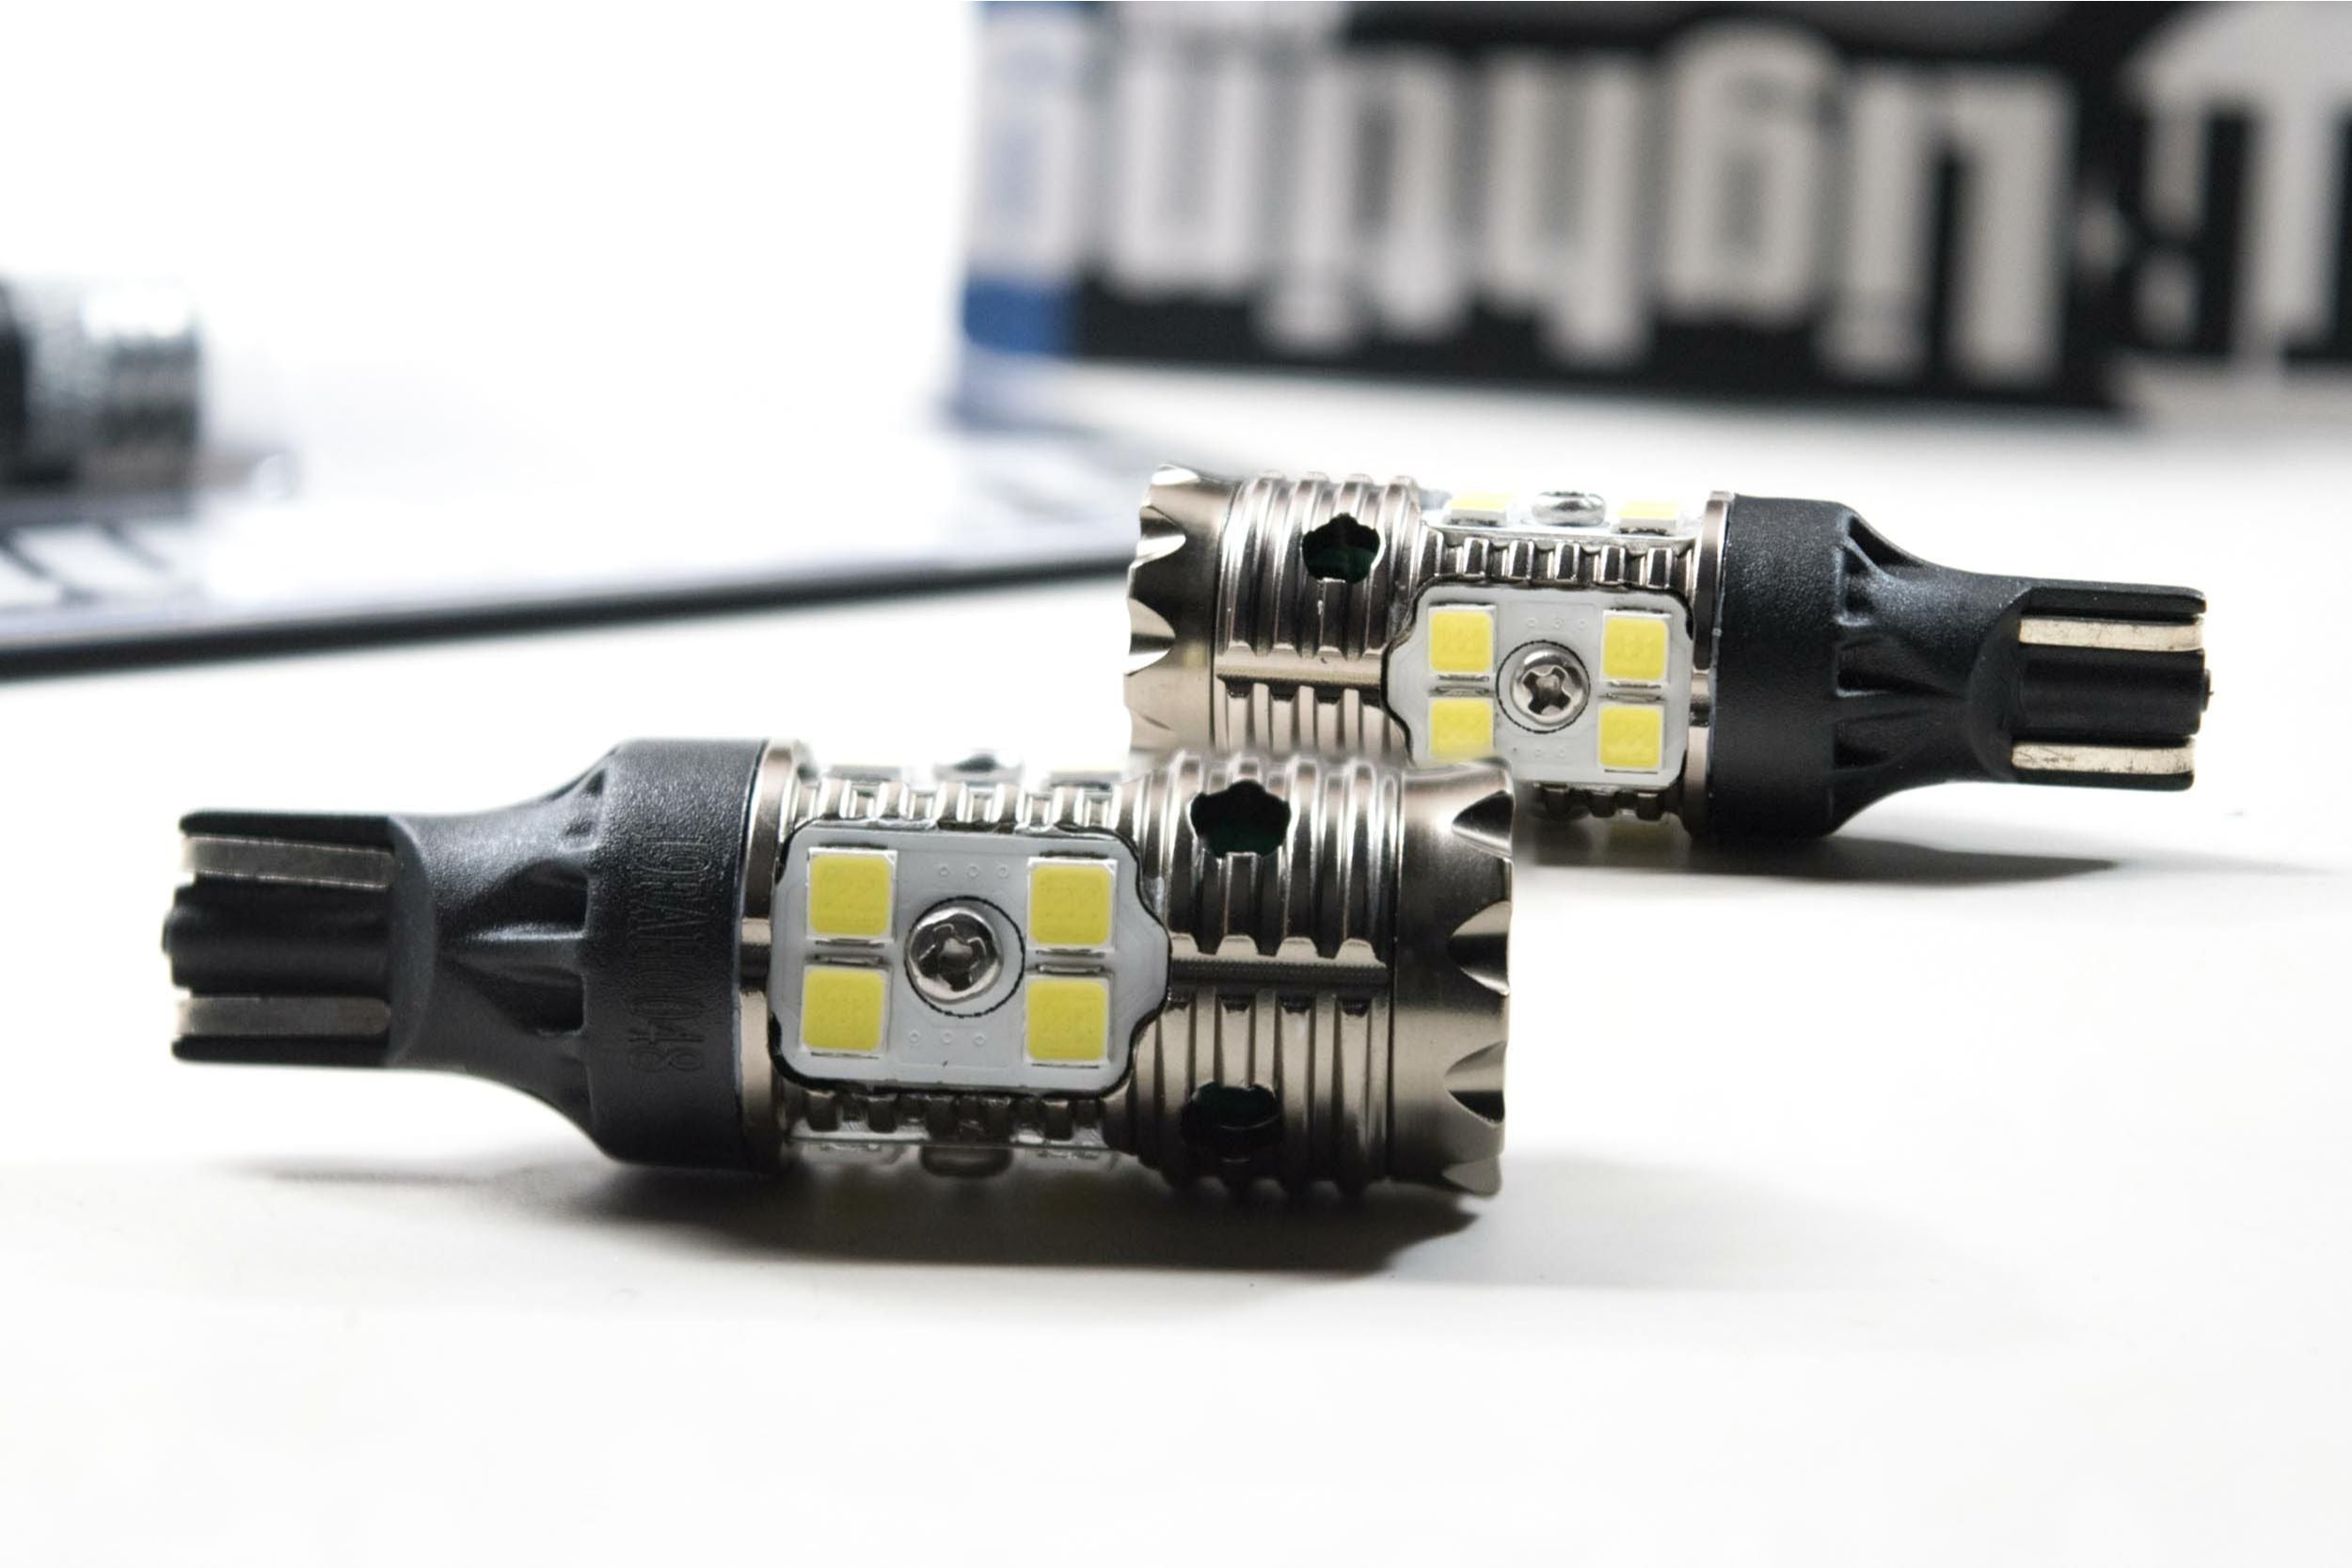 921/T15: GTR Lighting Carbide Canbus 2.0 LED Bulbs-